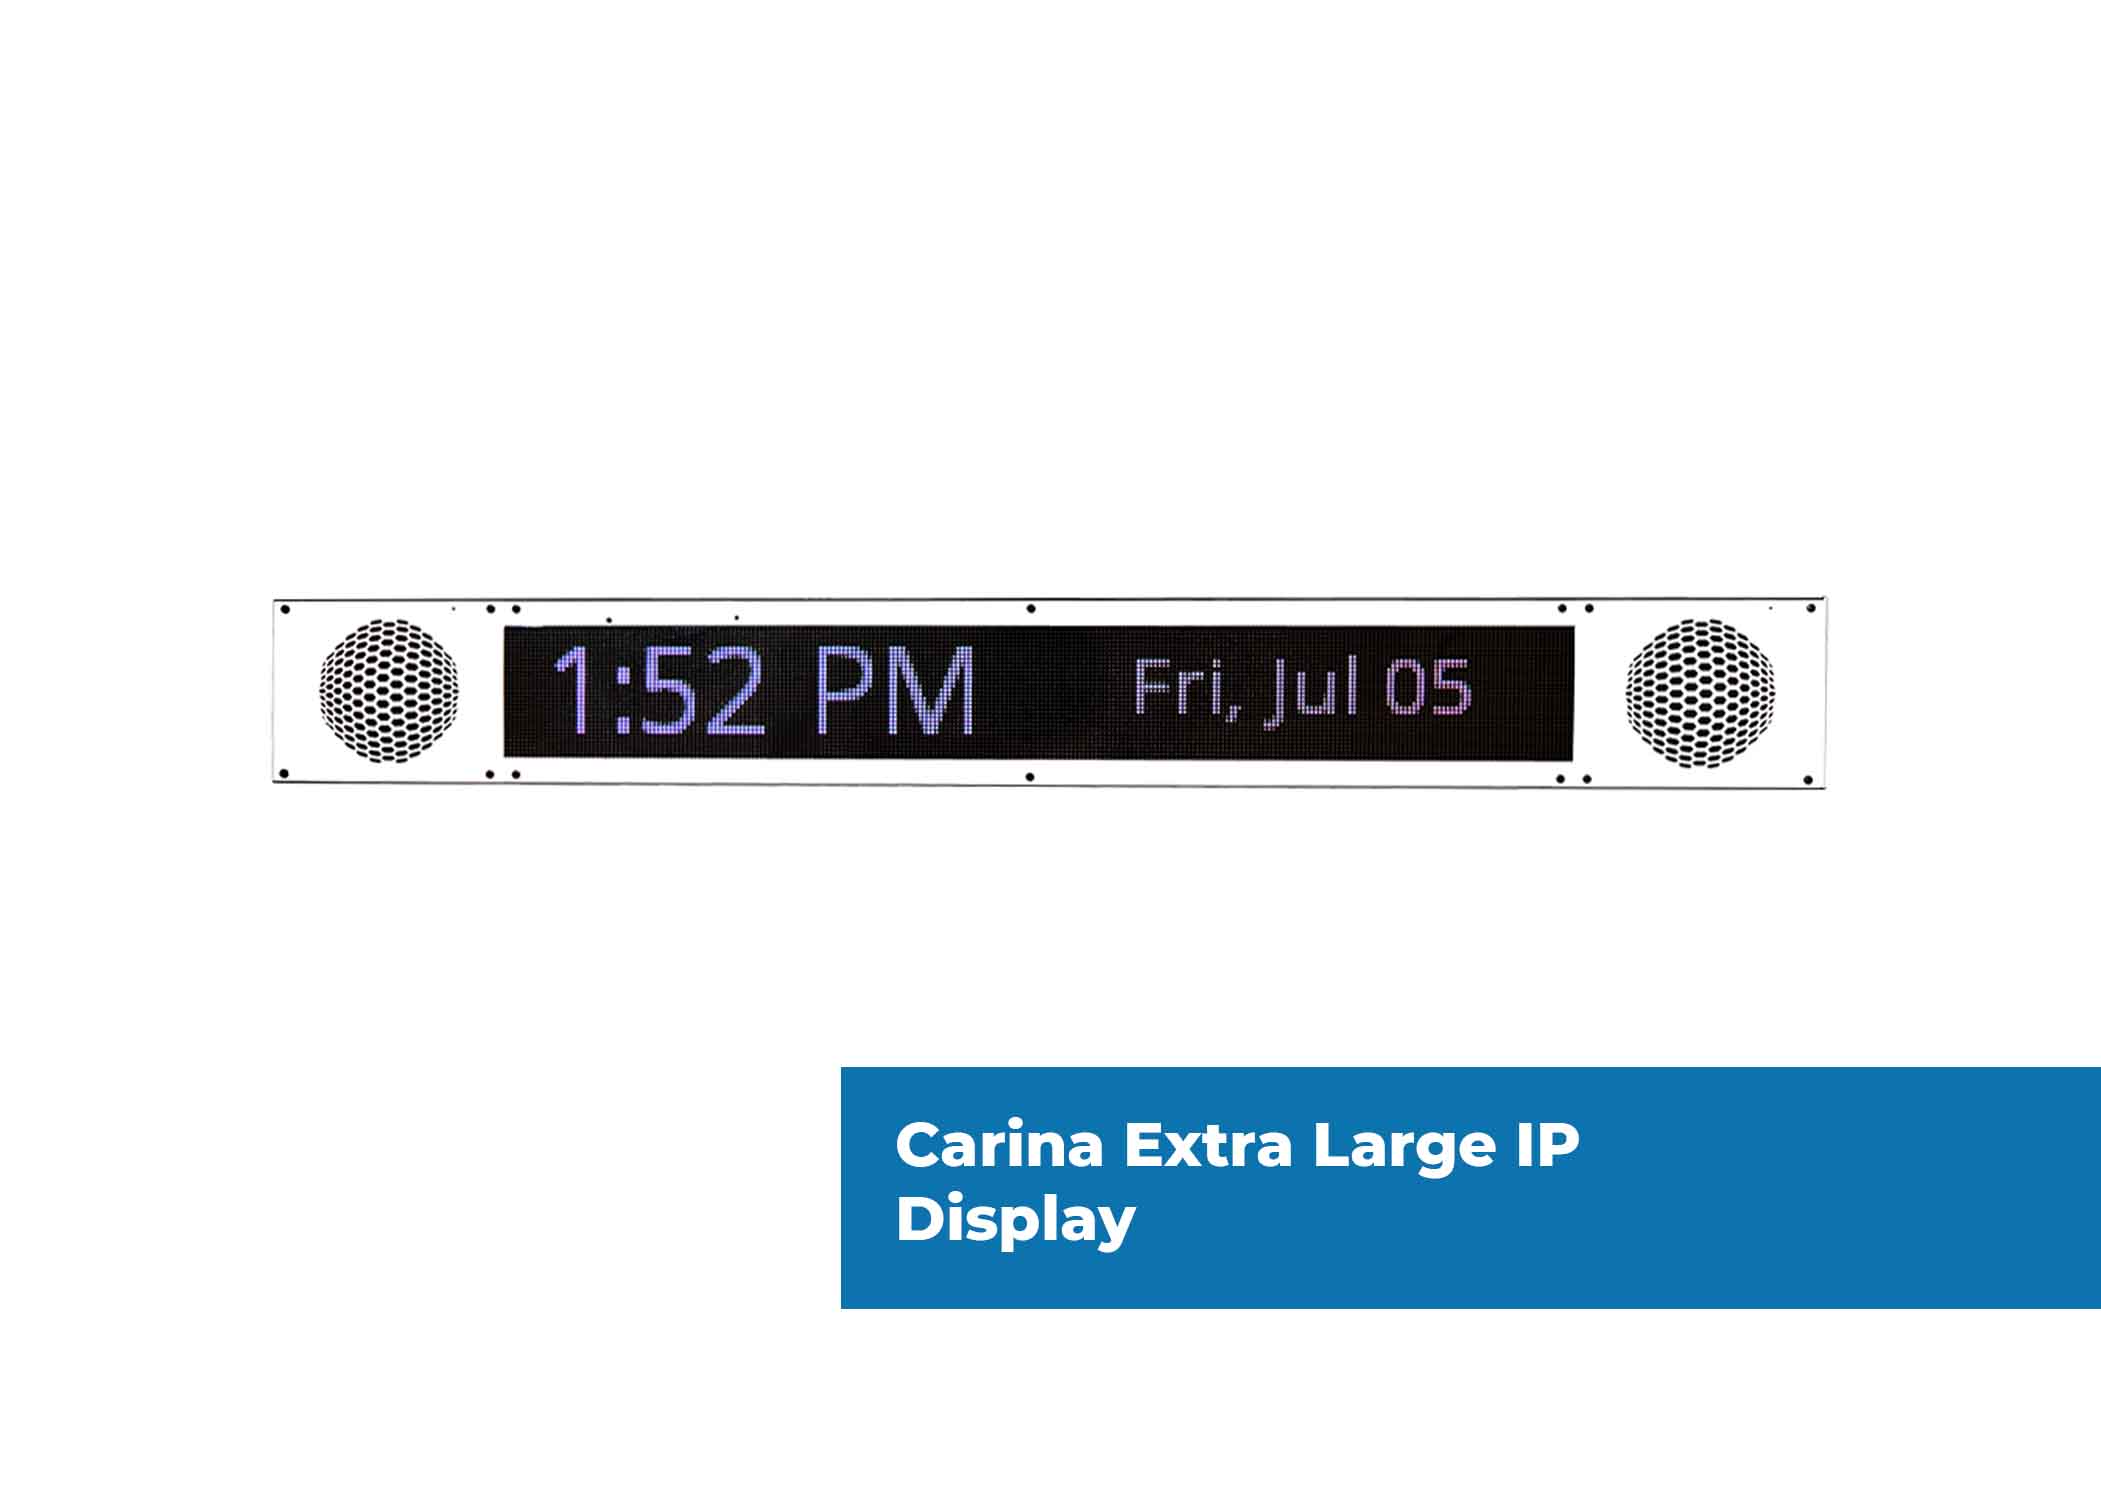 carina extra large ip display